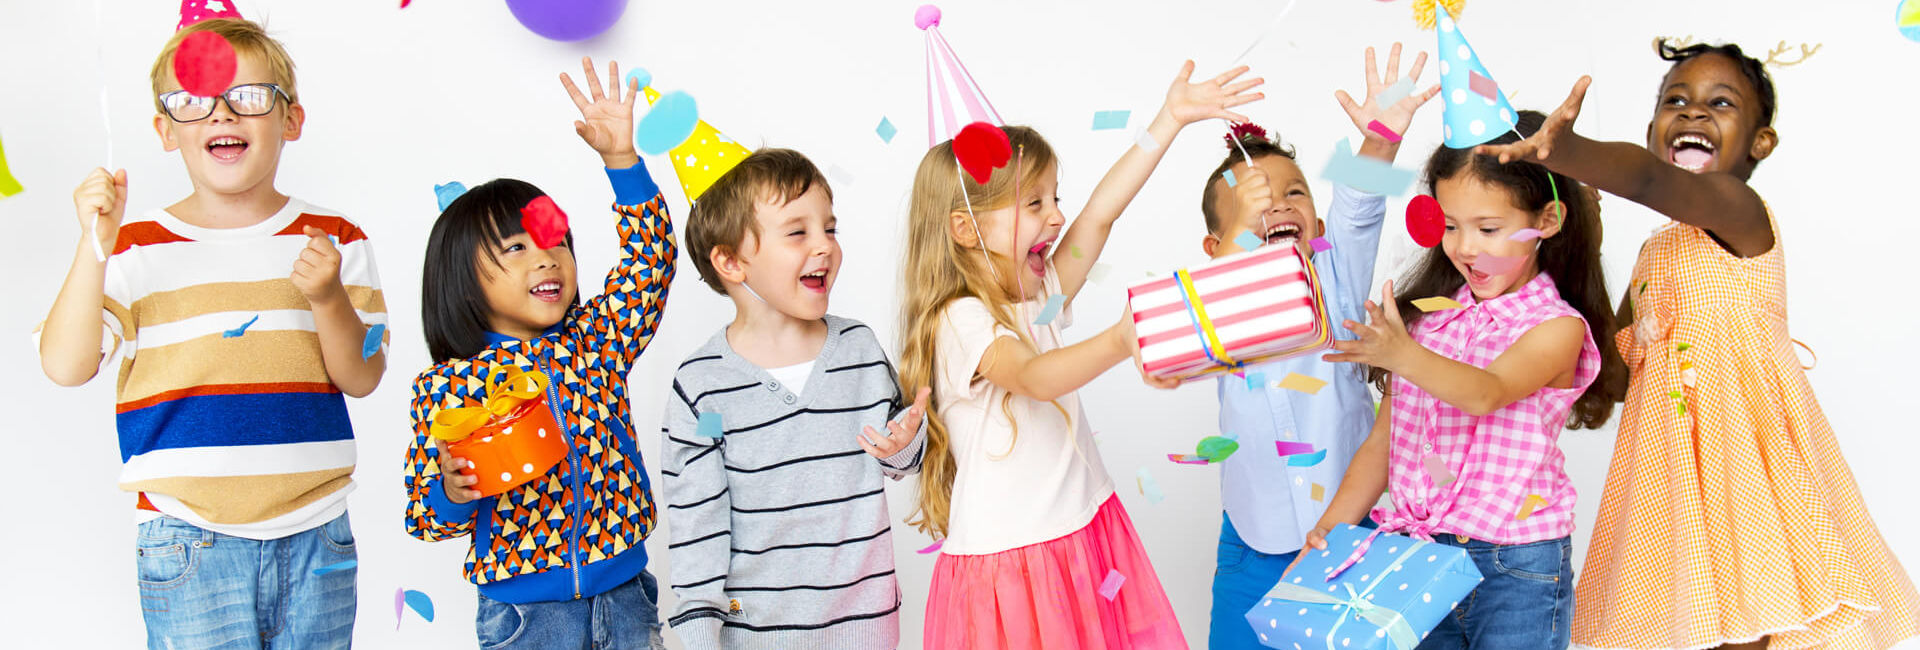 Kinderfeestje met cadeautjes, ballonnen en hoedjes - Gasterij 't Karrewiel